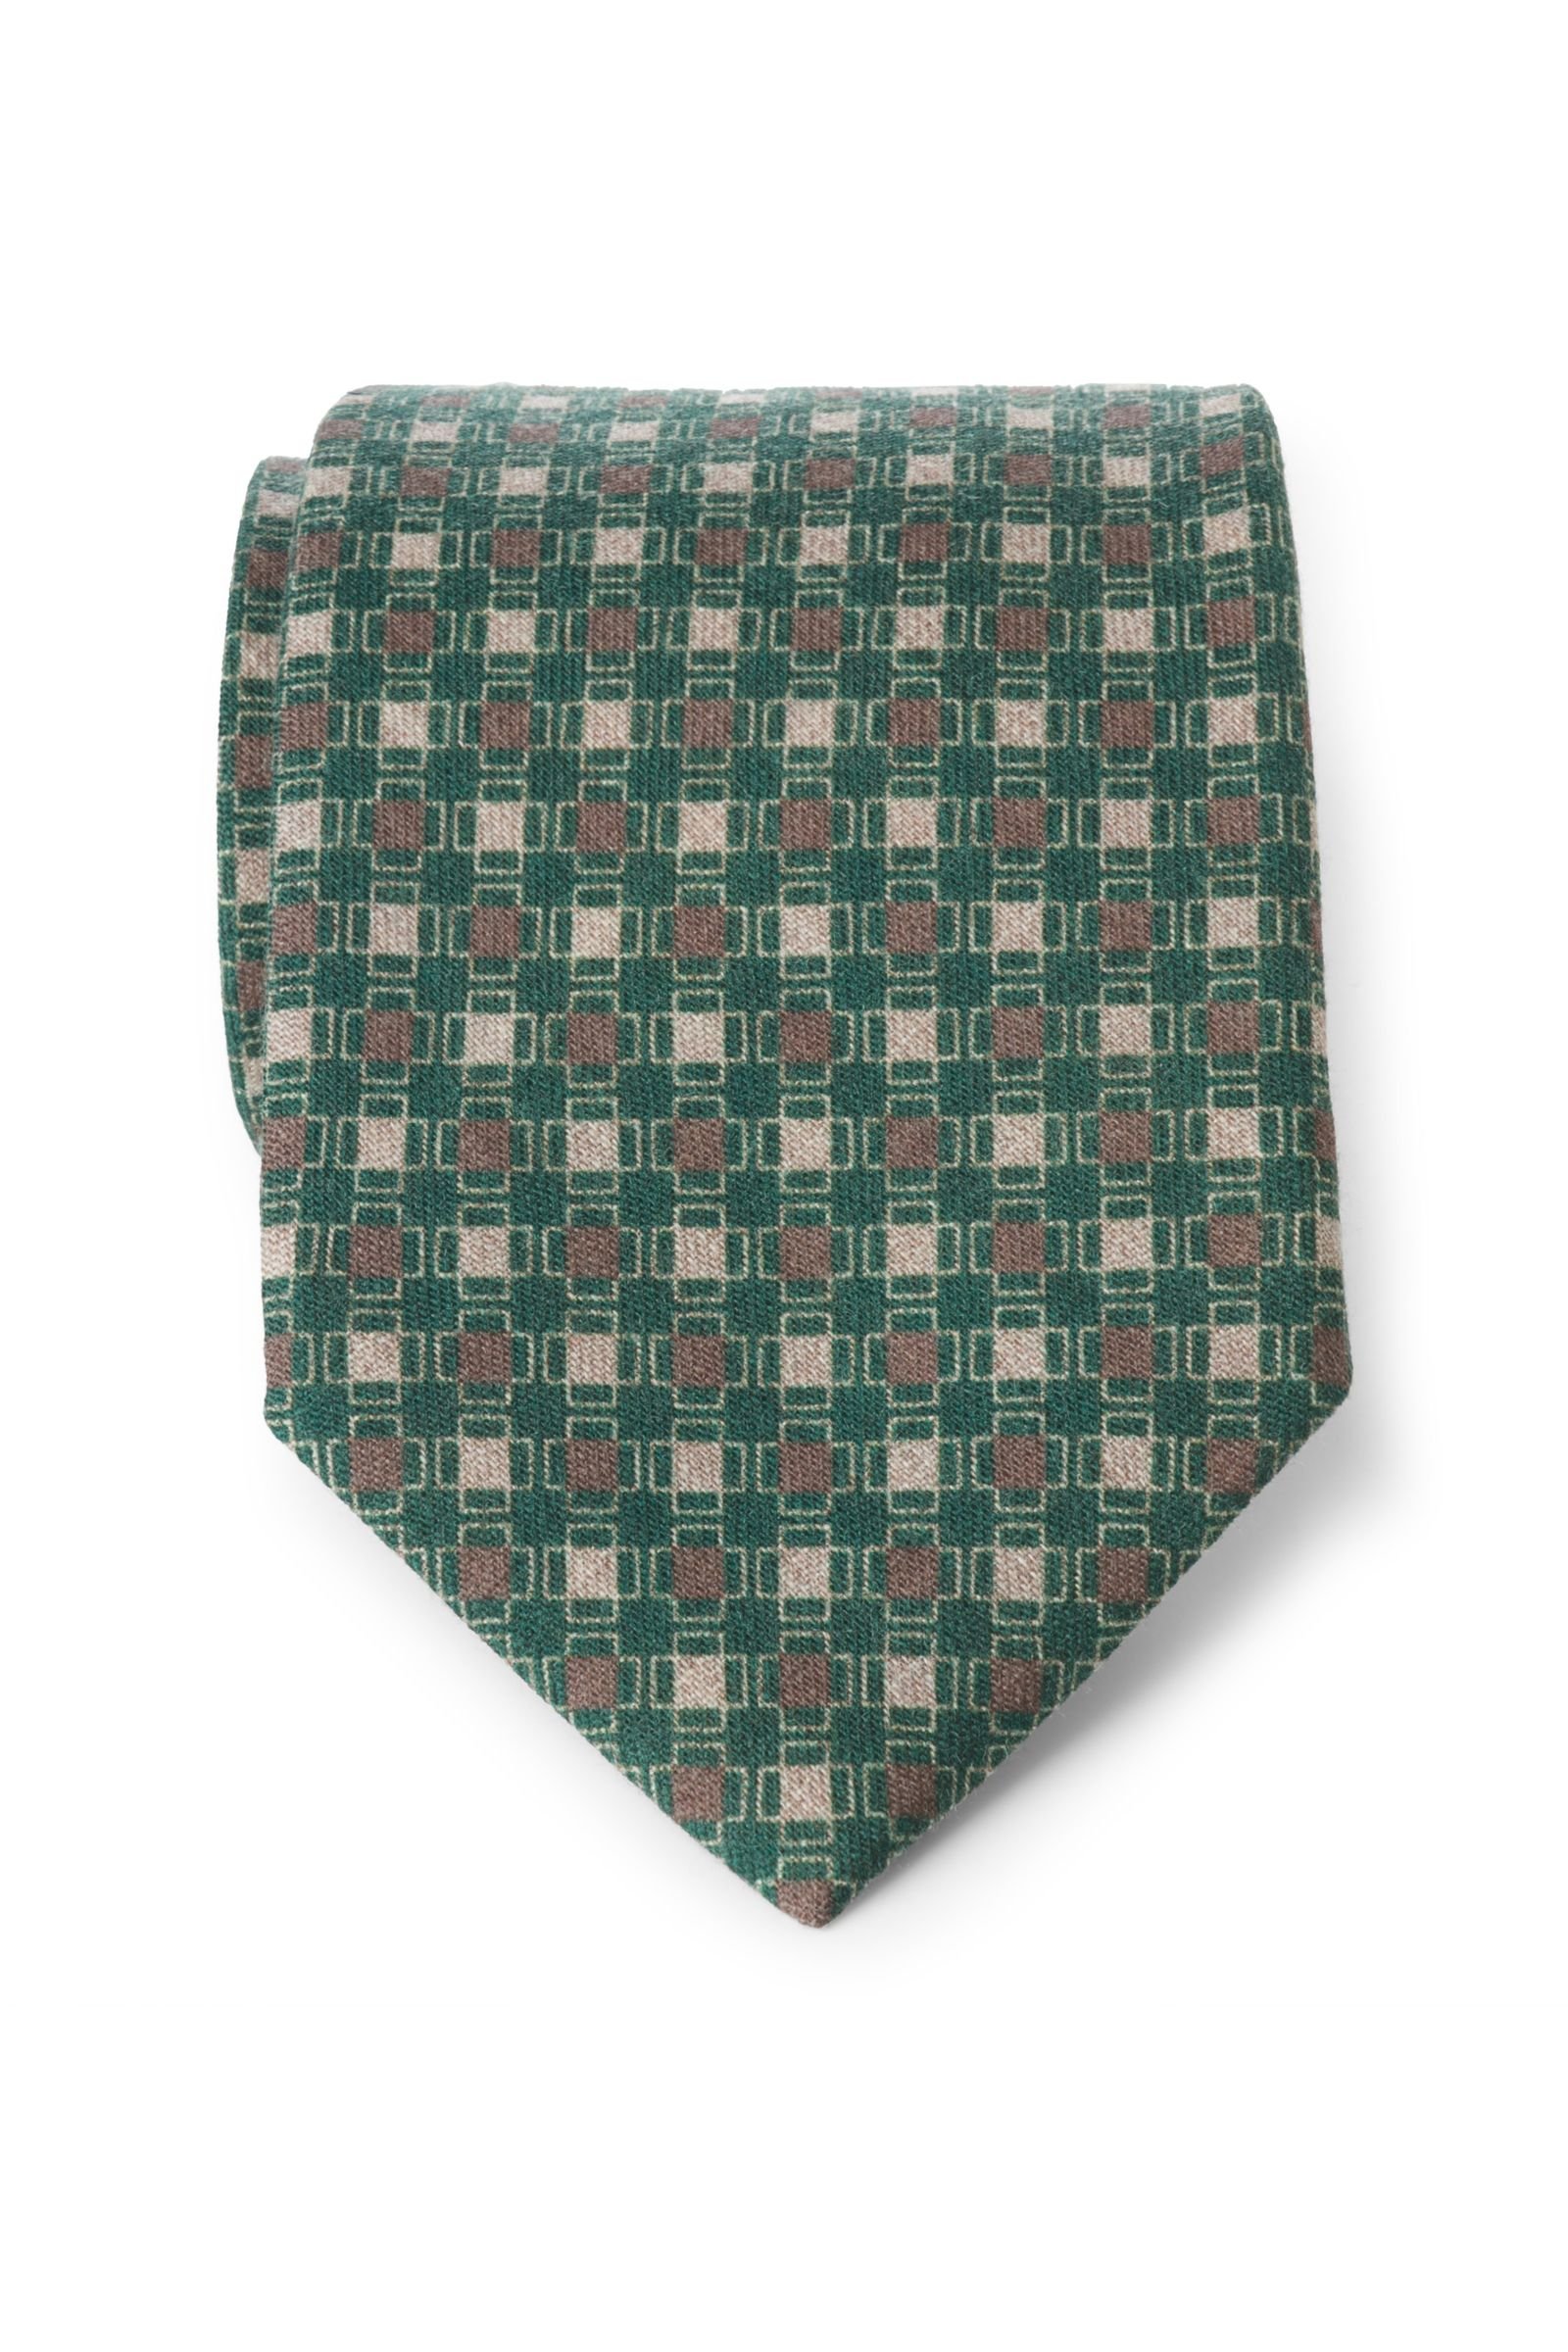 Wool tie green patterned